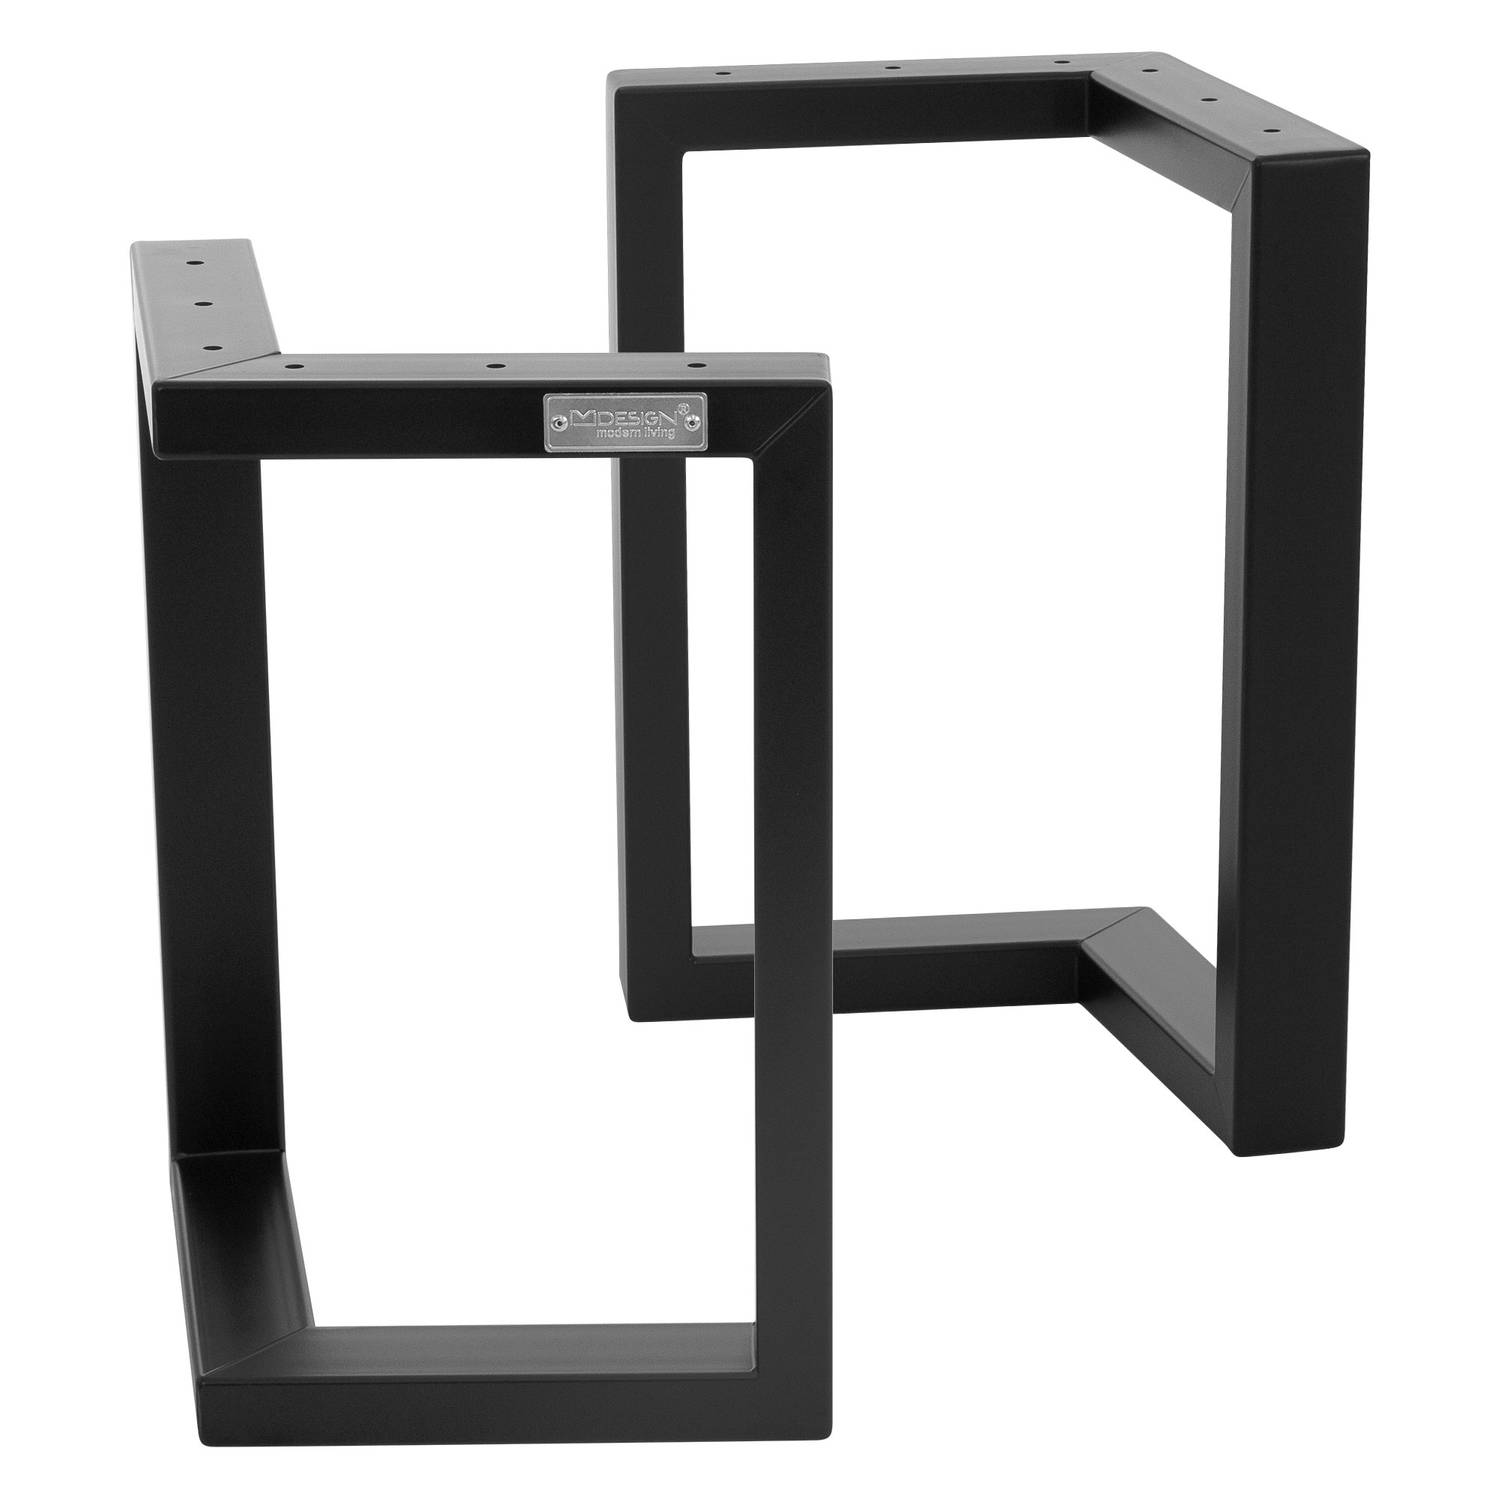 Tafelpoten Set van 2 V Vorm 38x43 cm Zwart Metaal ML-Design